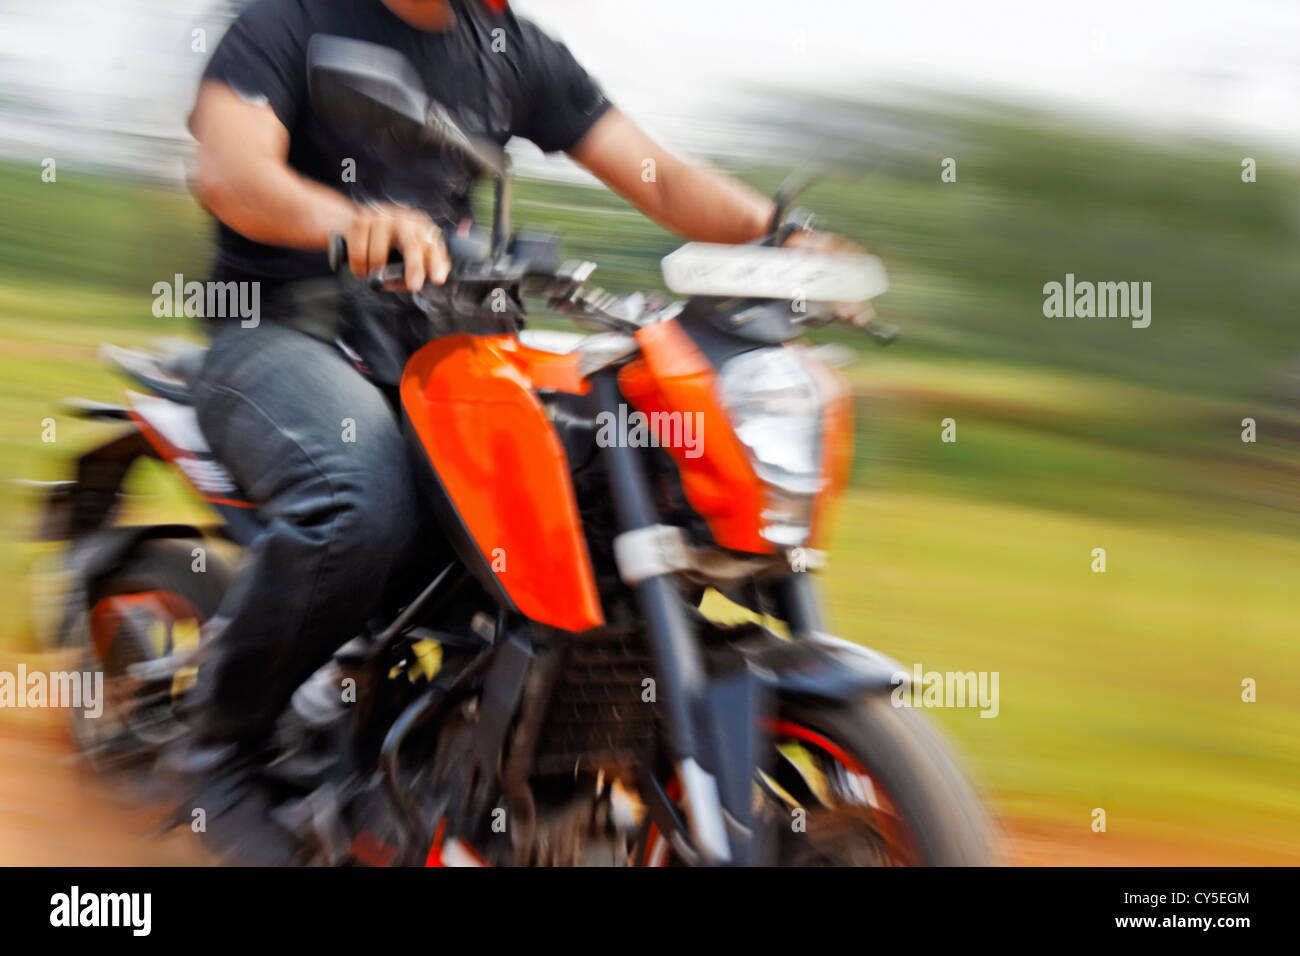 Capture d'image stéréo générique orange vitesse moto avec boiseries rider. t location Pachmarhi, Madya Predesh Inde Banque D'Images